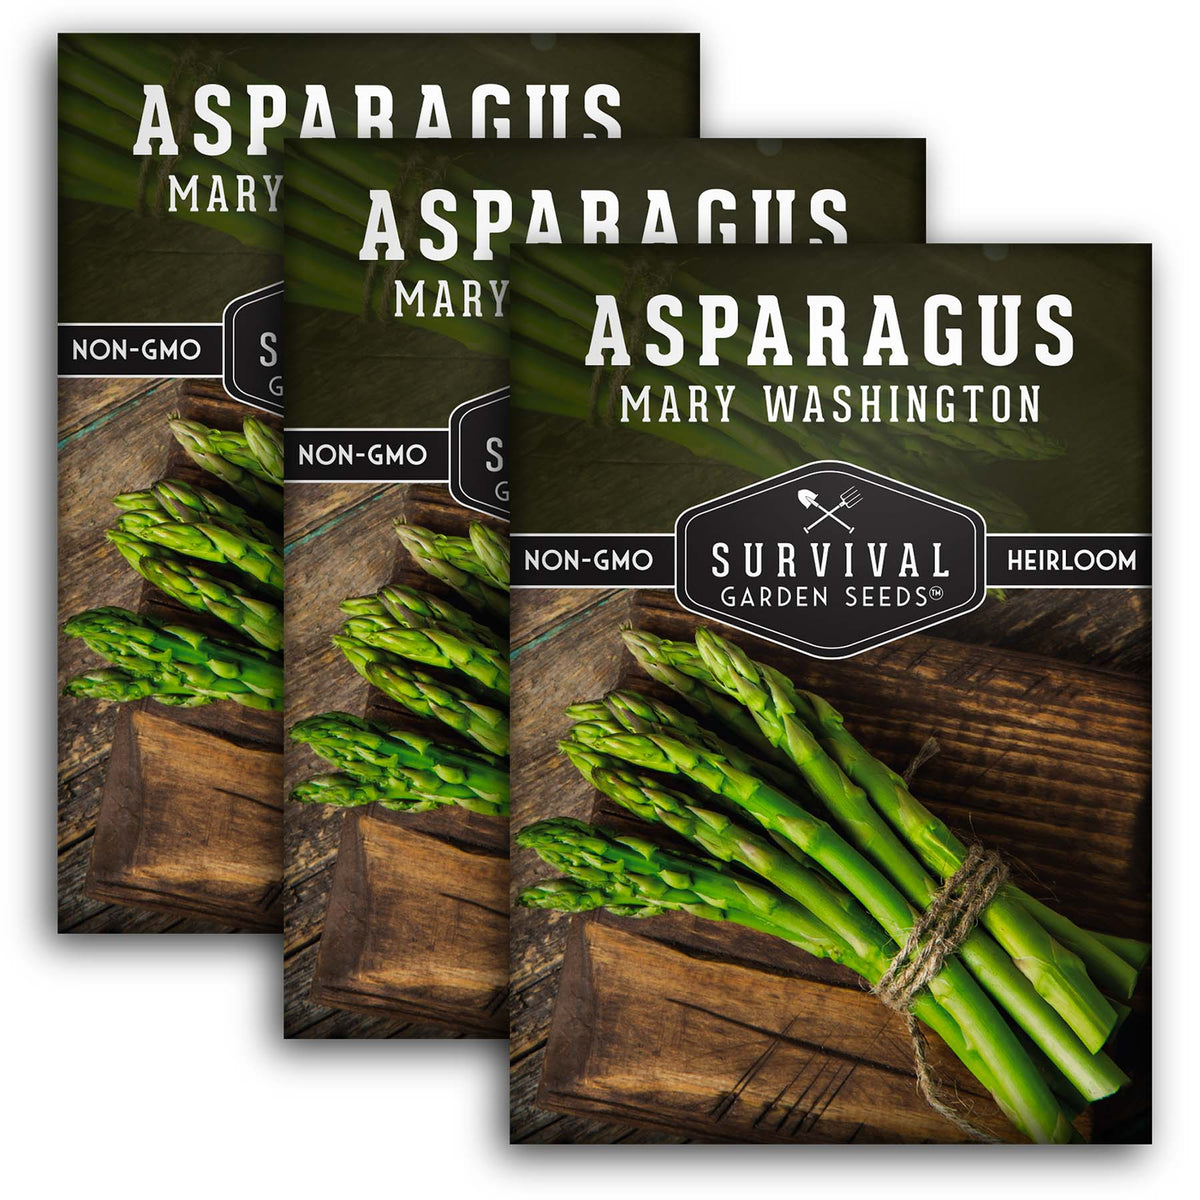 Mary Washington Asparagus Seed